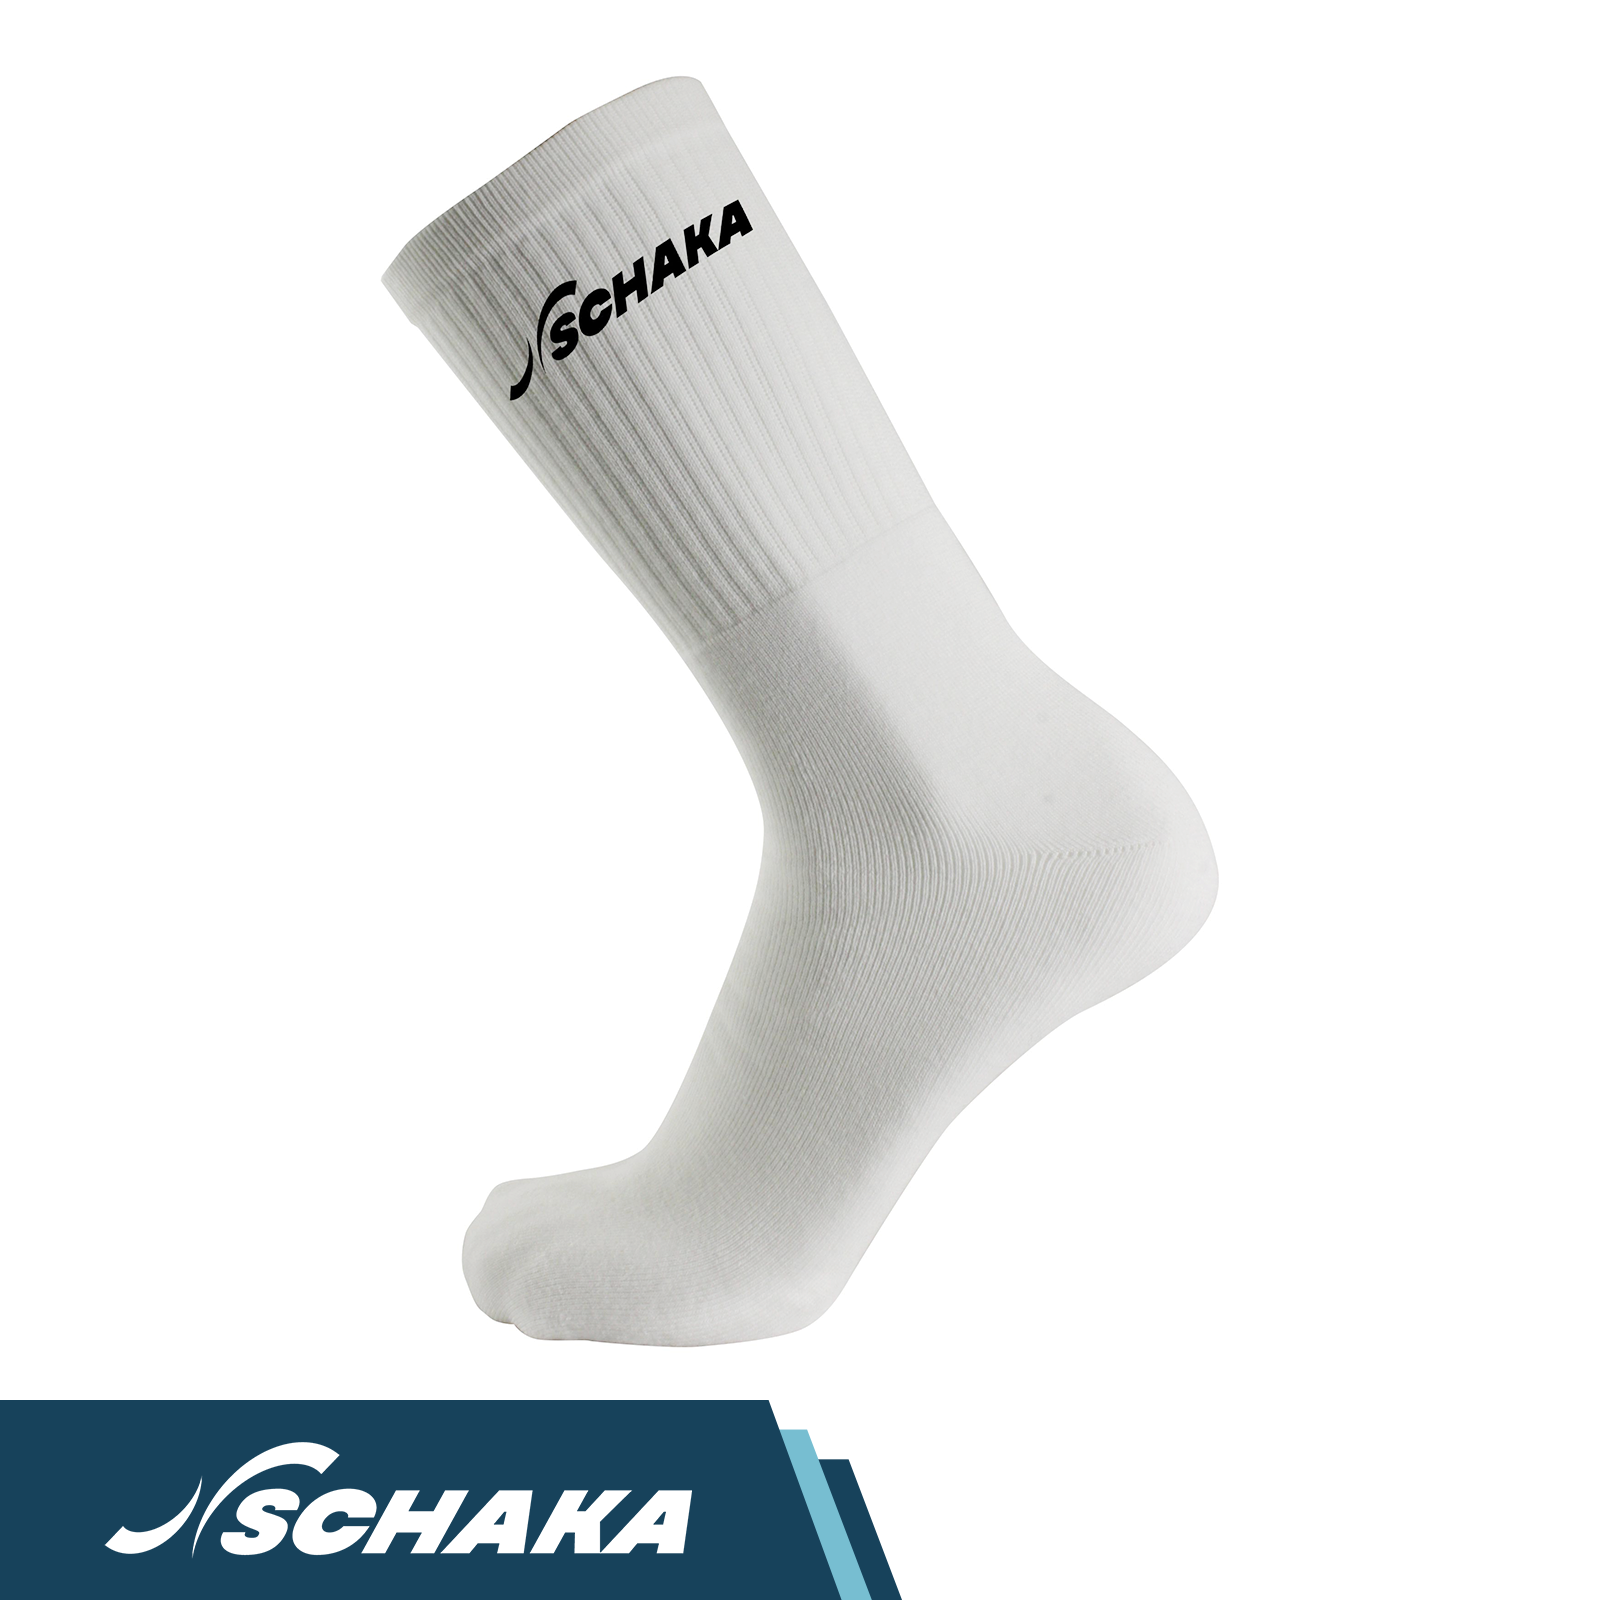 39-42 Polyamide, Sport-Socken | Baumwolle, | | Paar) Weiß 22% Elasthan 5% (3 73% Schaka